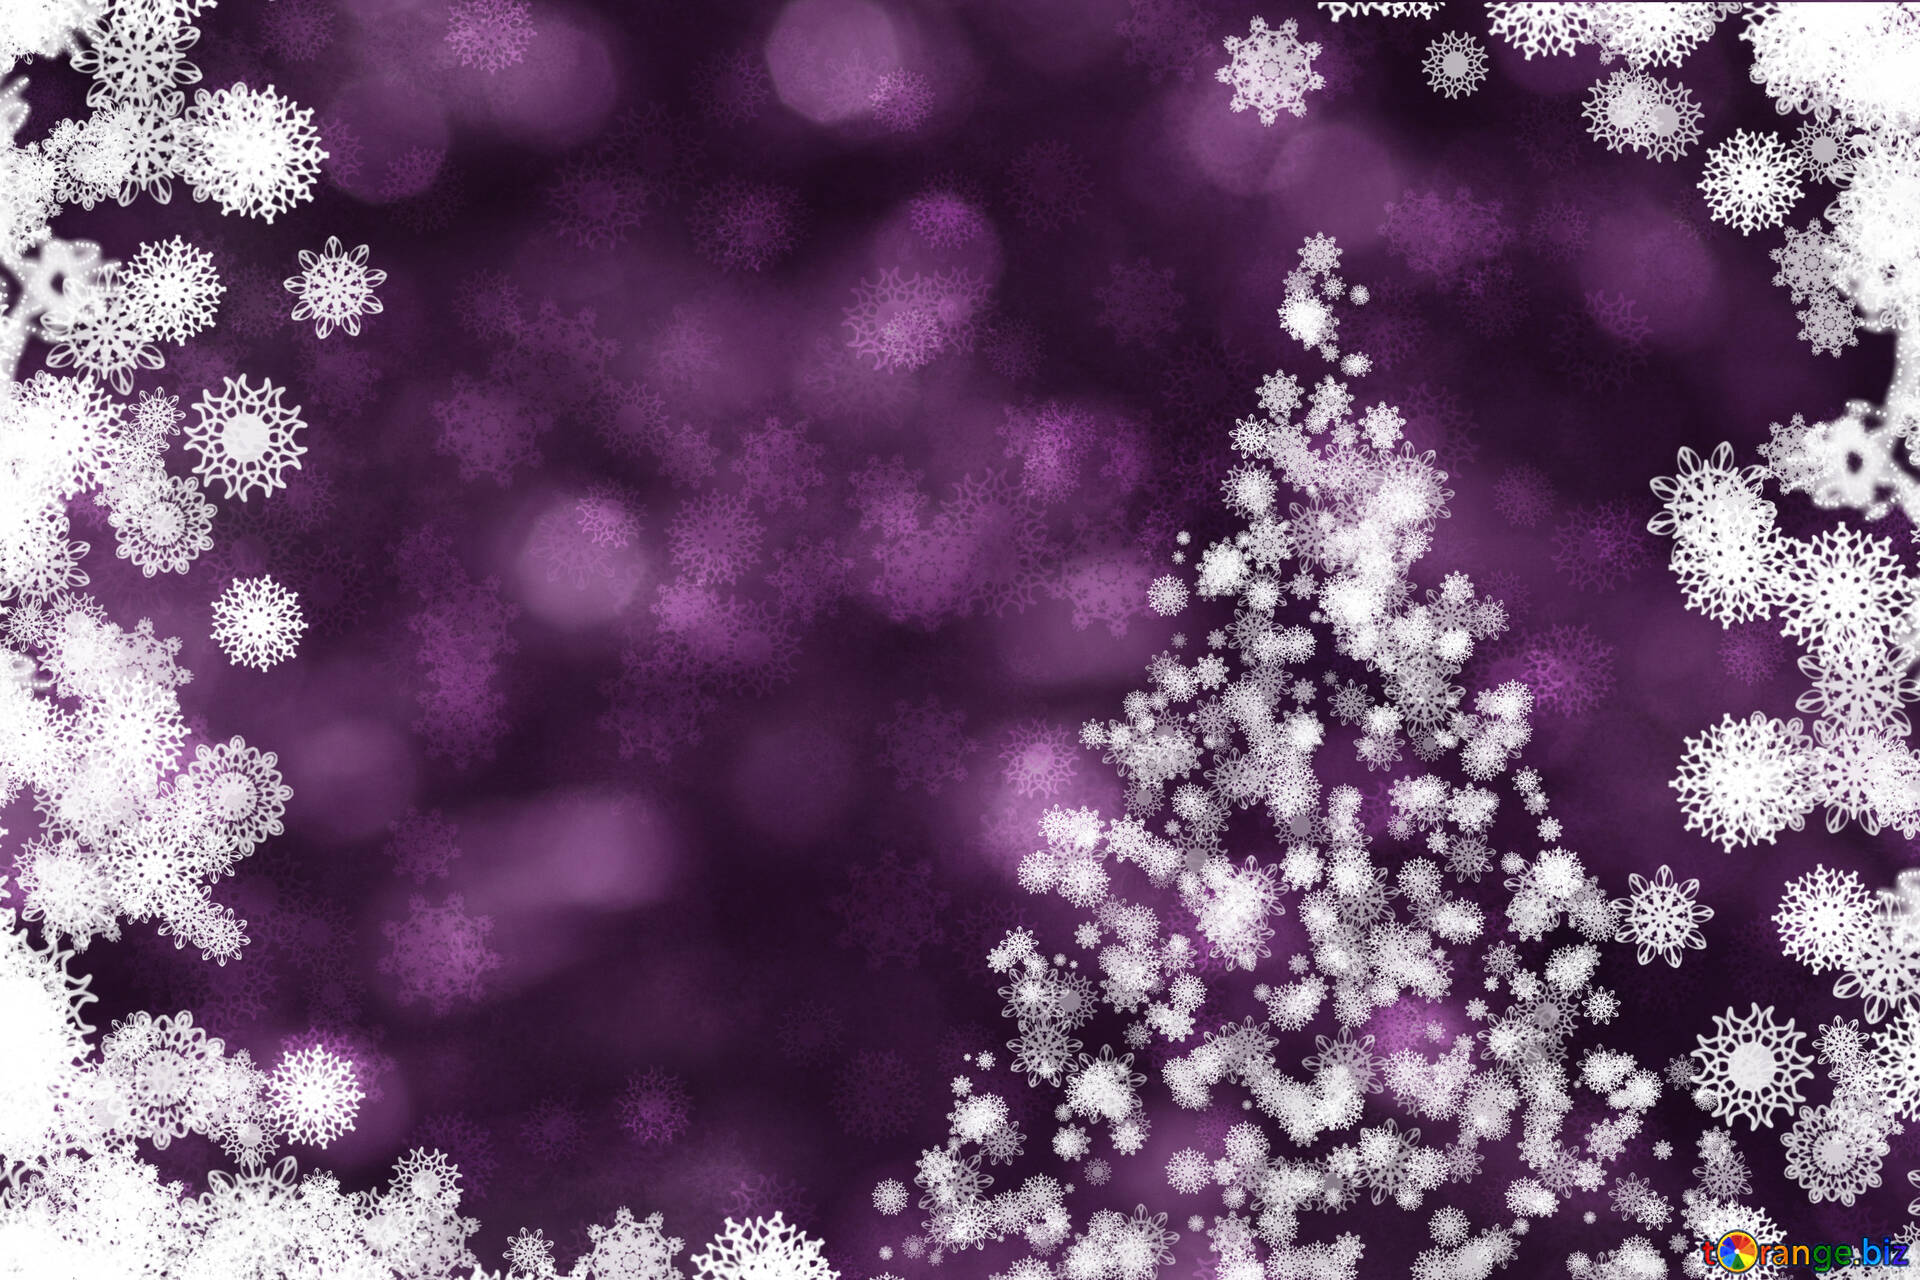 Mùa giáng sinh sắp tới đang đến gần và không có gì tuyệt vời hơn khi thưởng thức hình nền giáng sinh tím với cây thông của chúng tôi. Với màu tím rực rỡ được tô điểm bằng những vòng tròn vàng ánh kim, hình ảnh sẽ cho bạn cảm giác ấm áp và tuyệt vời.